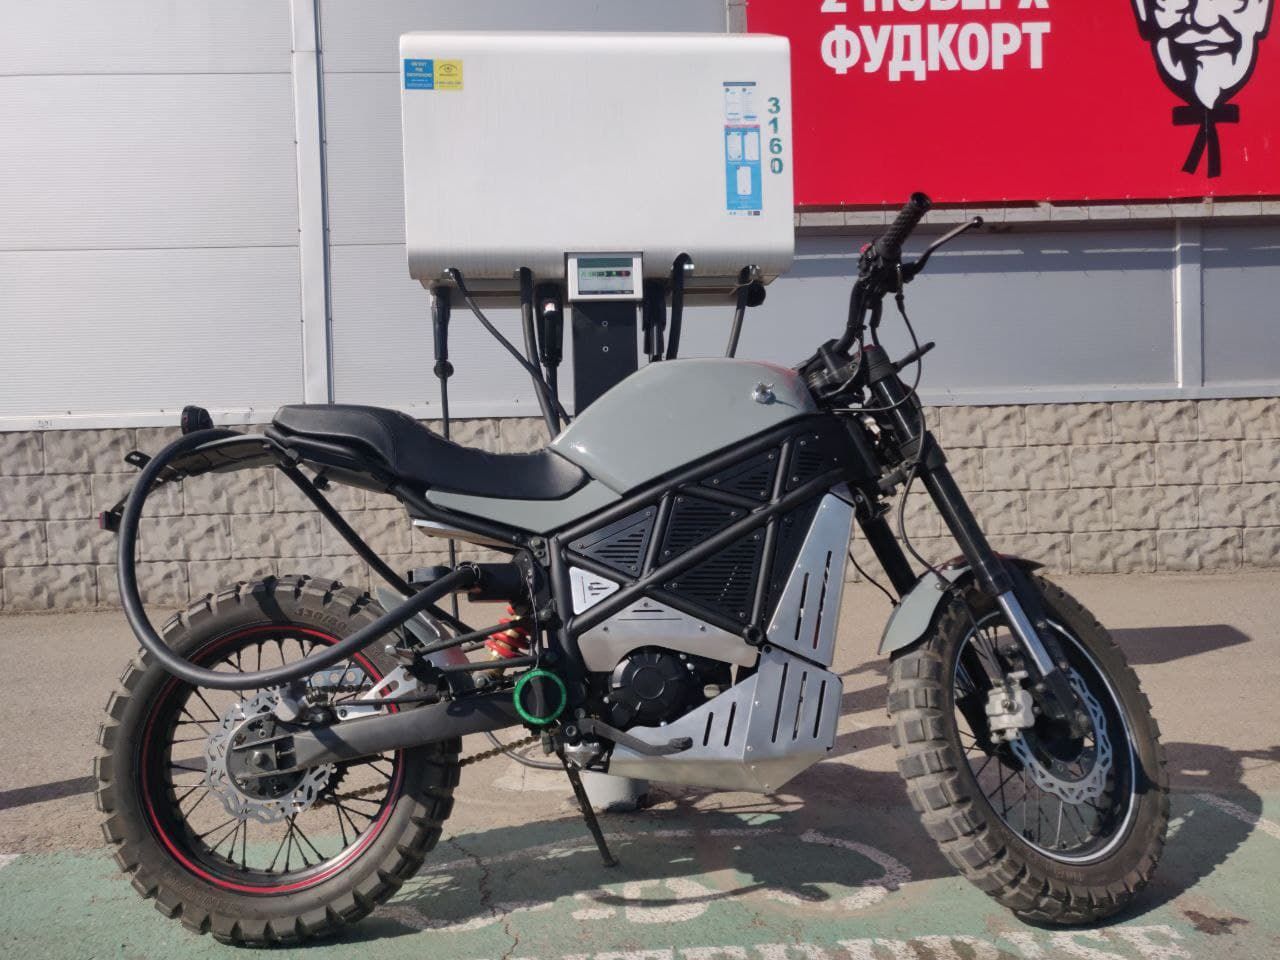 Українська EMGo Technology запускає виробництво електромотоцикла: його виведуть на світові ринки - Інновації